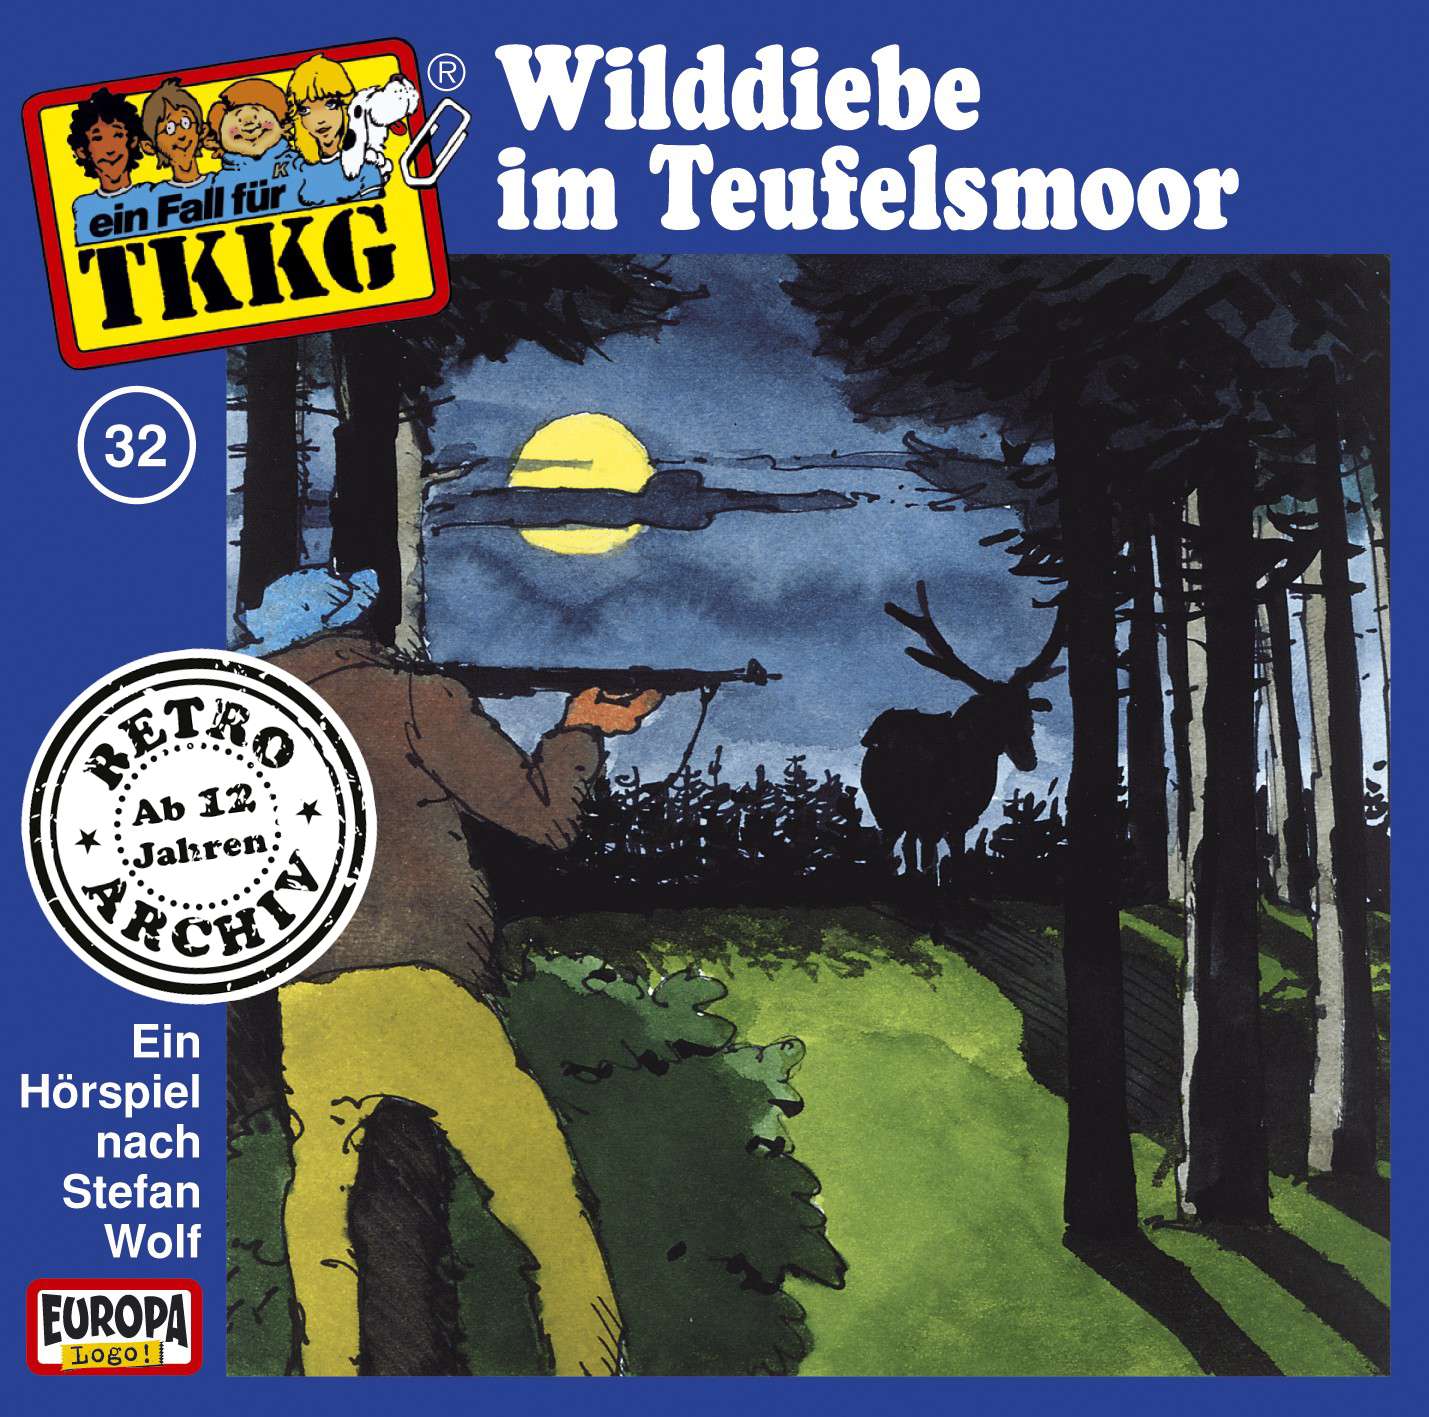 TKKG Retro-Archiv: Wilddiebe im Teufelsmoor